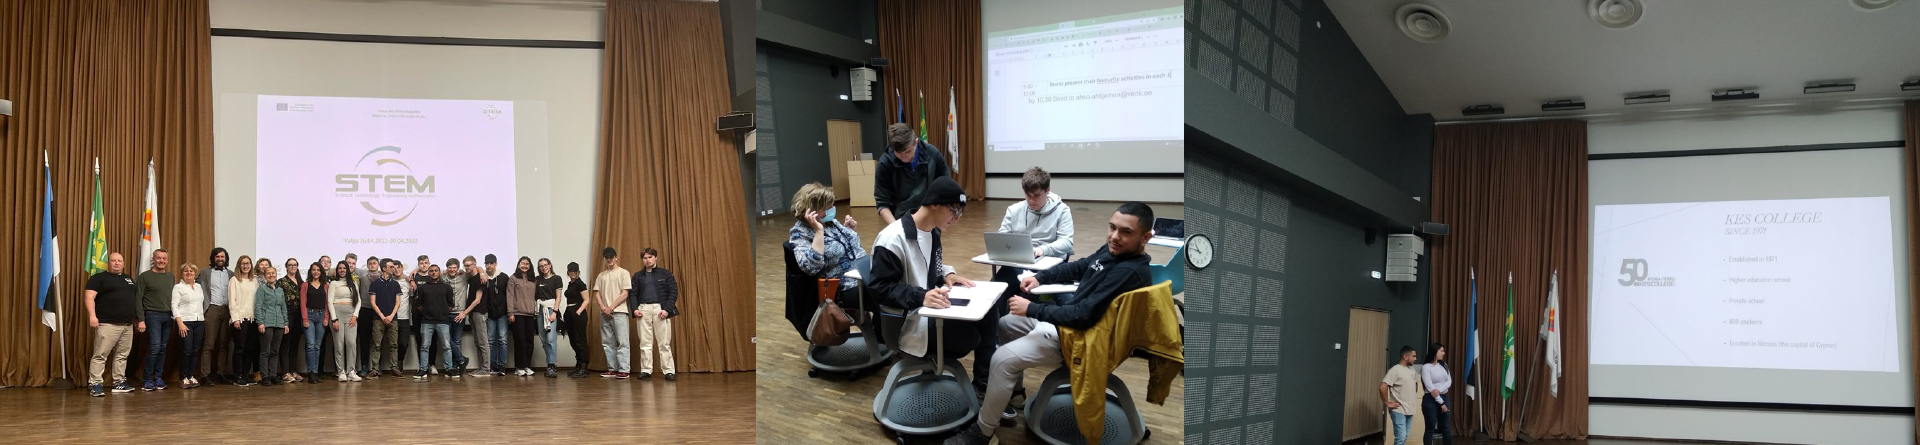 Συμμετοχή φοιτητών και καθηγητών στο Πρόγραμμα “STEM in Education” στην Εσθονία